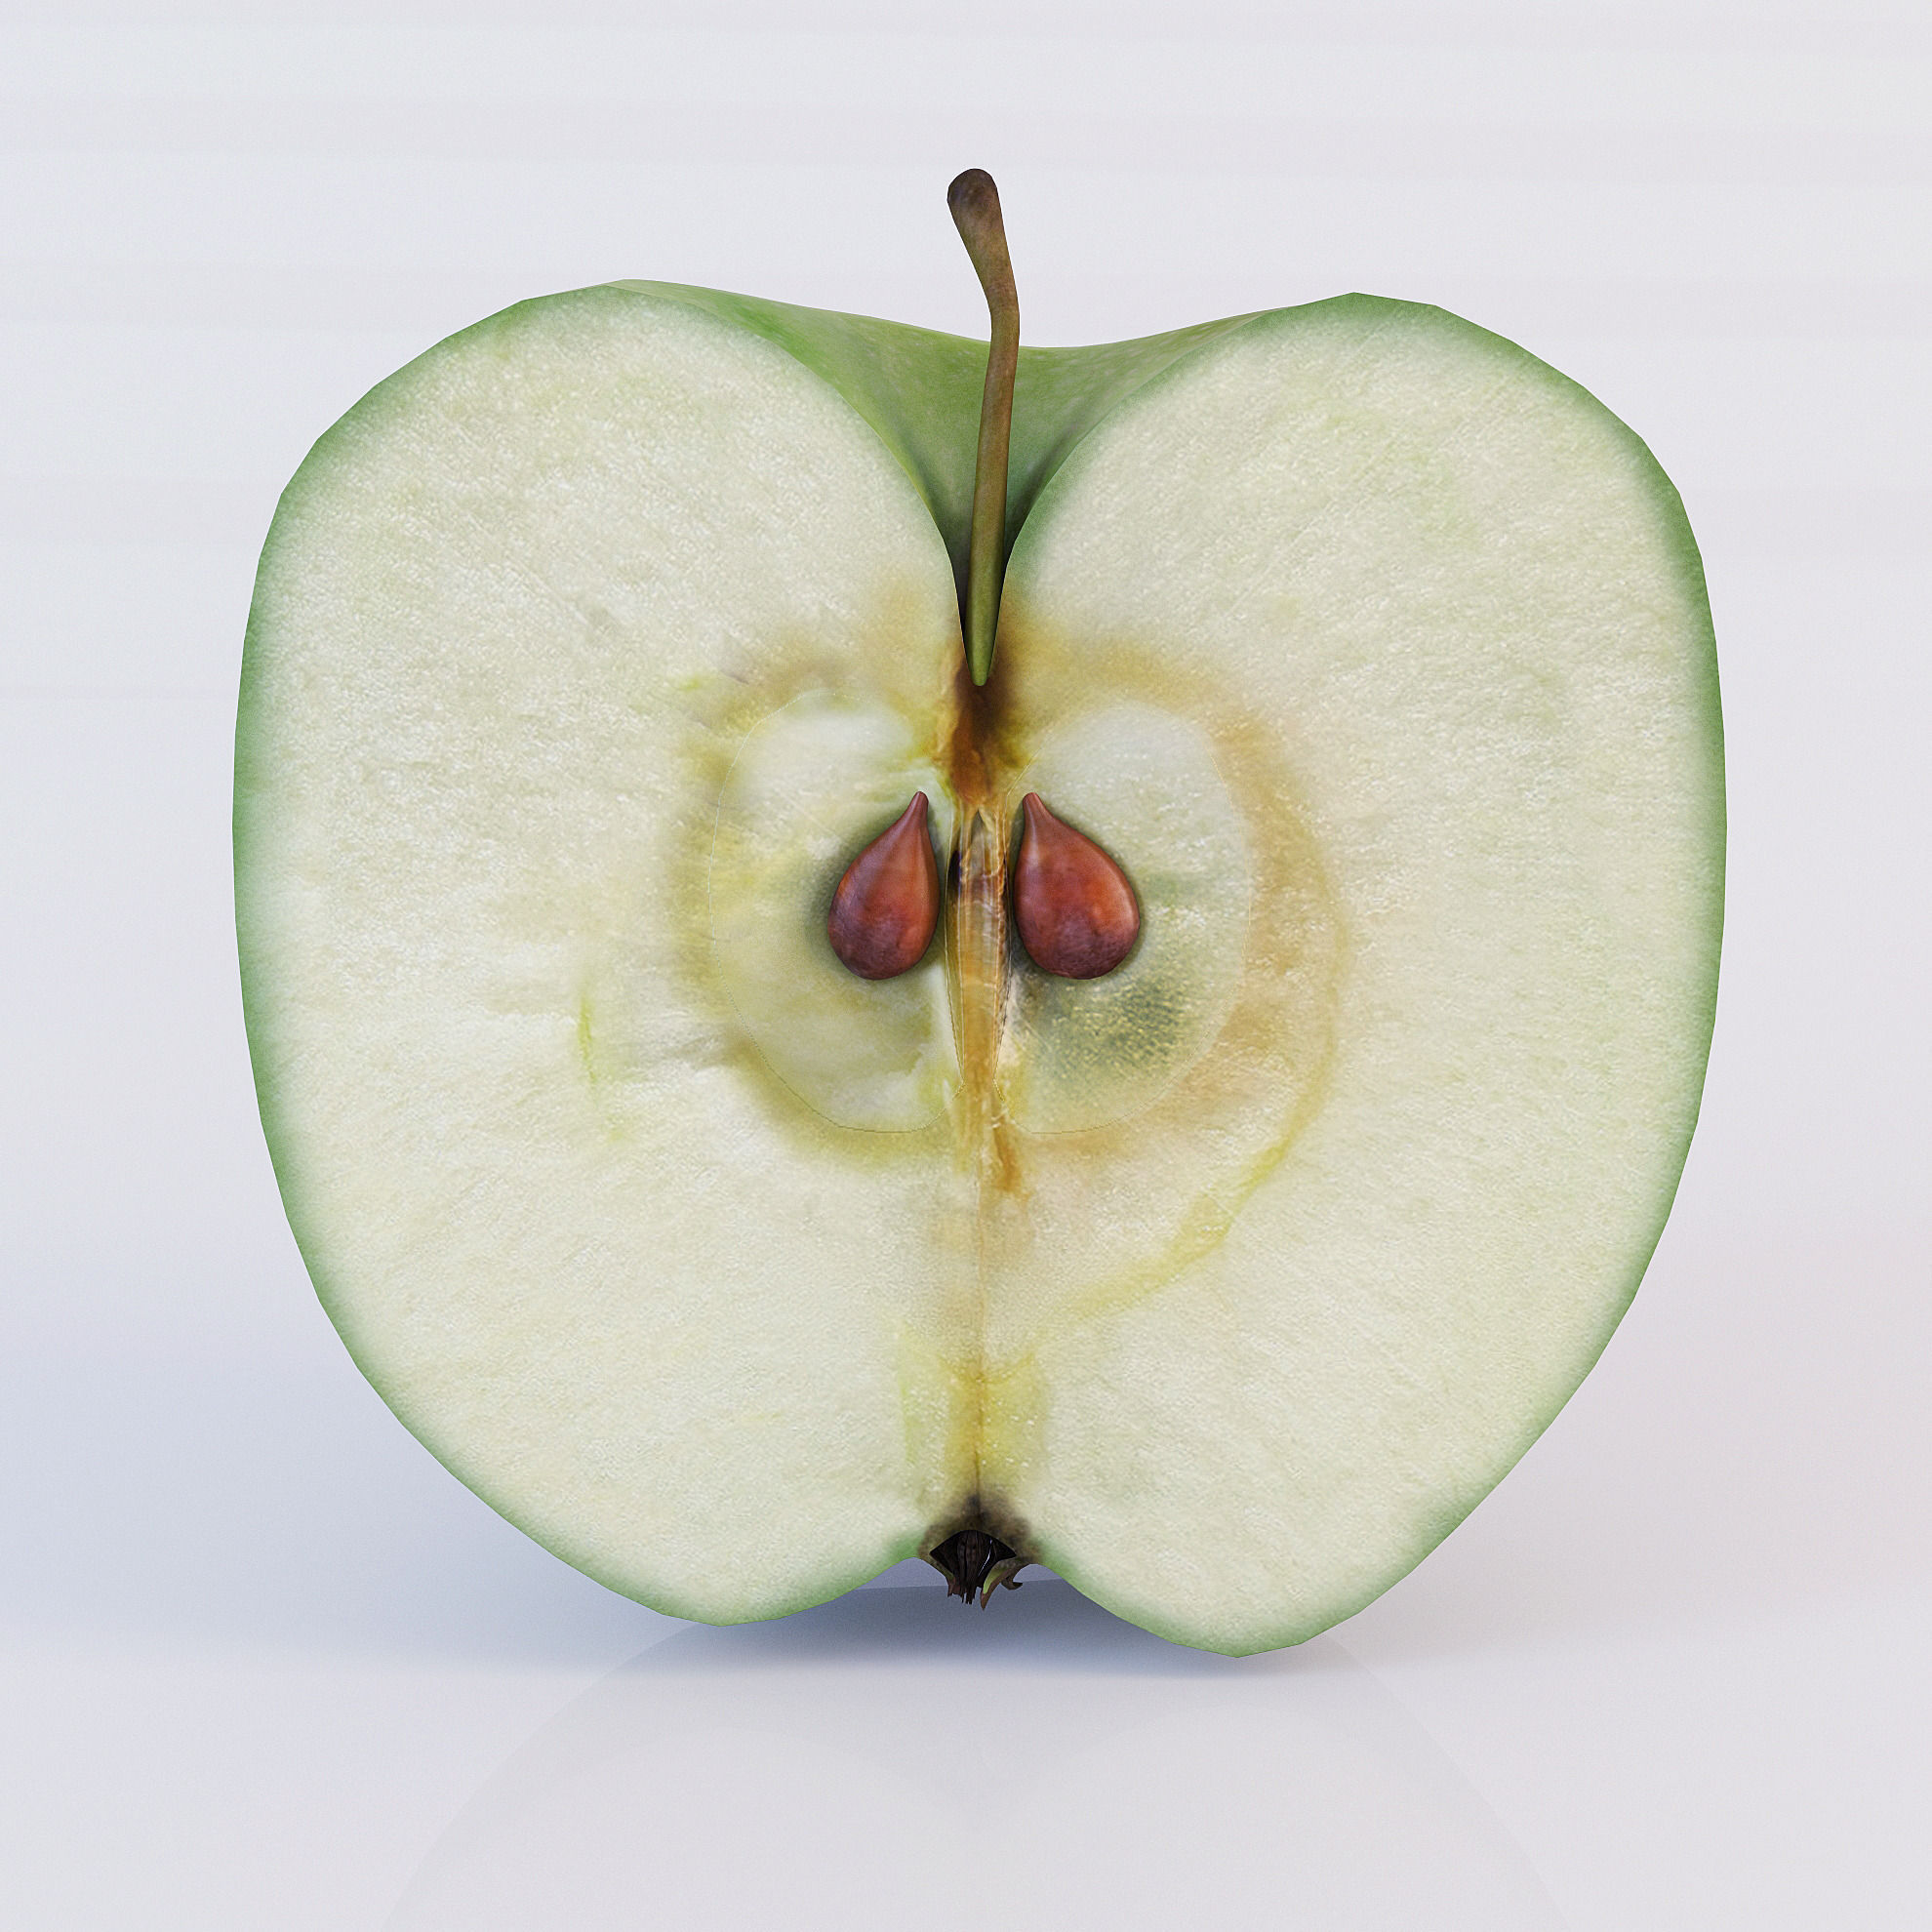 Sliced apple photo